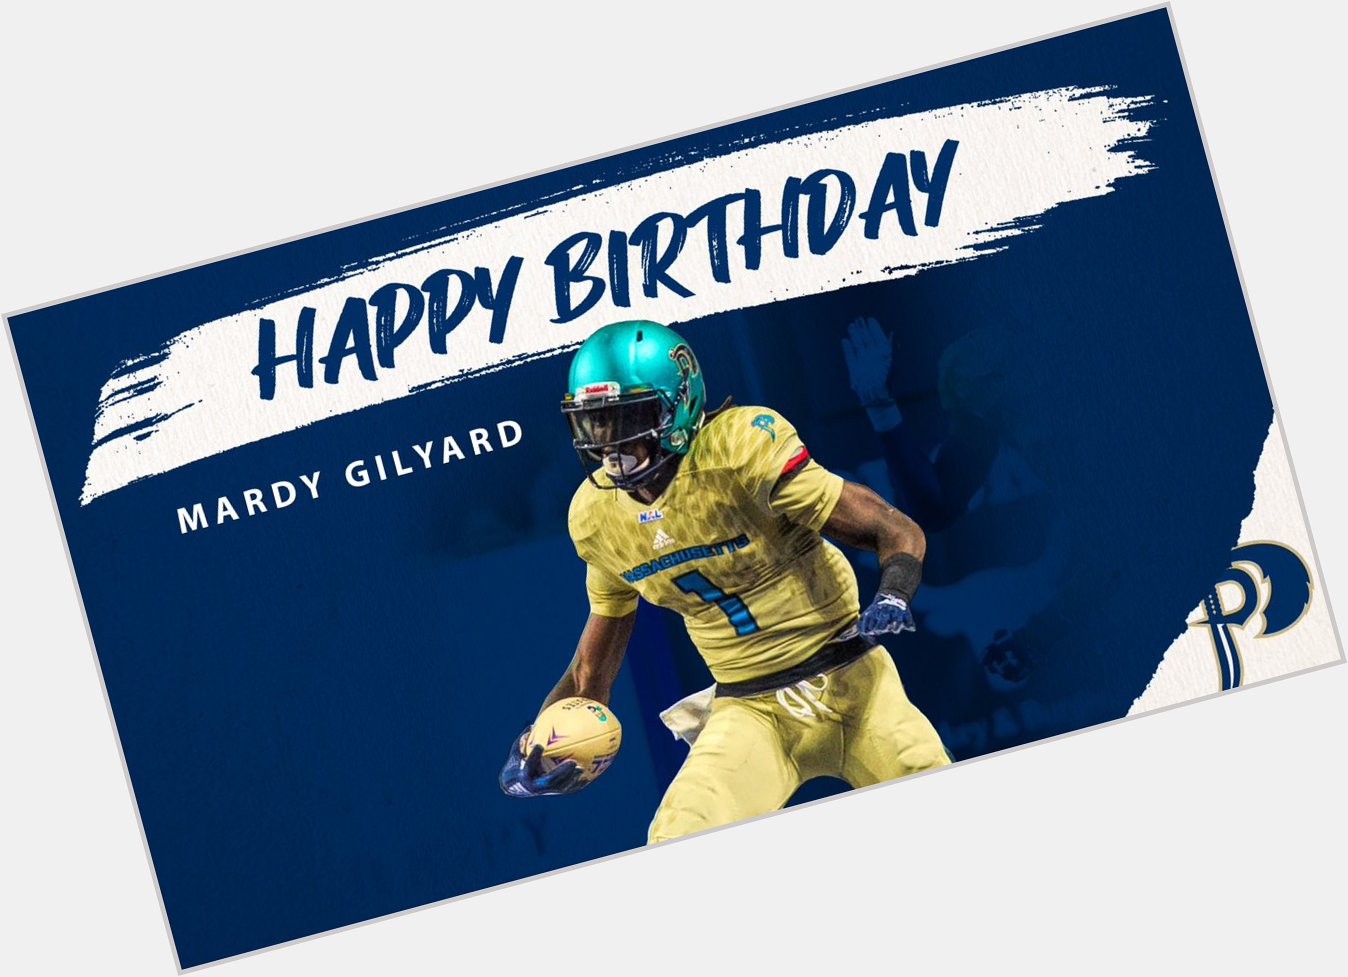 We d like to wish WR Mardy Gilyard a very happy birthday! 